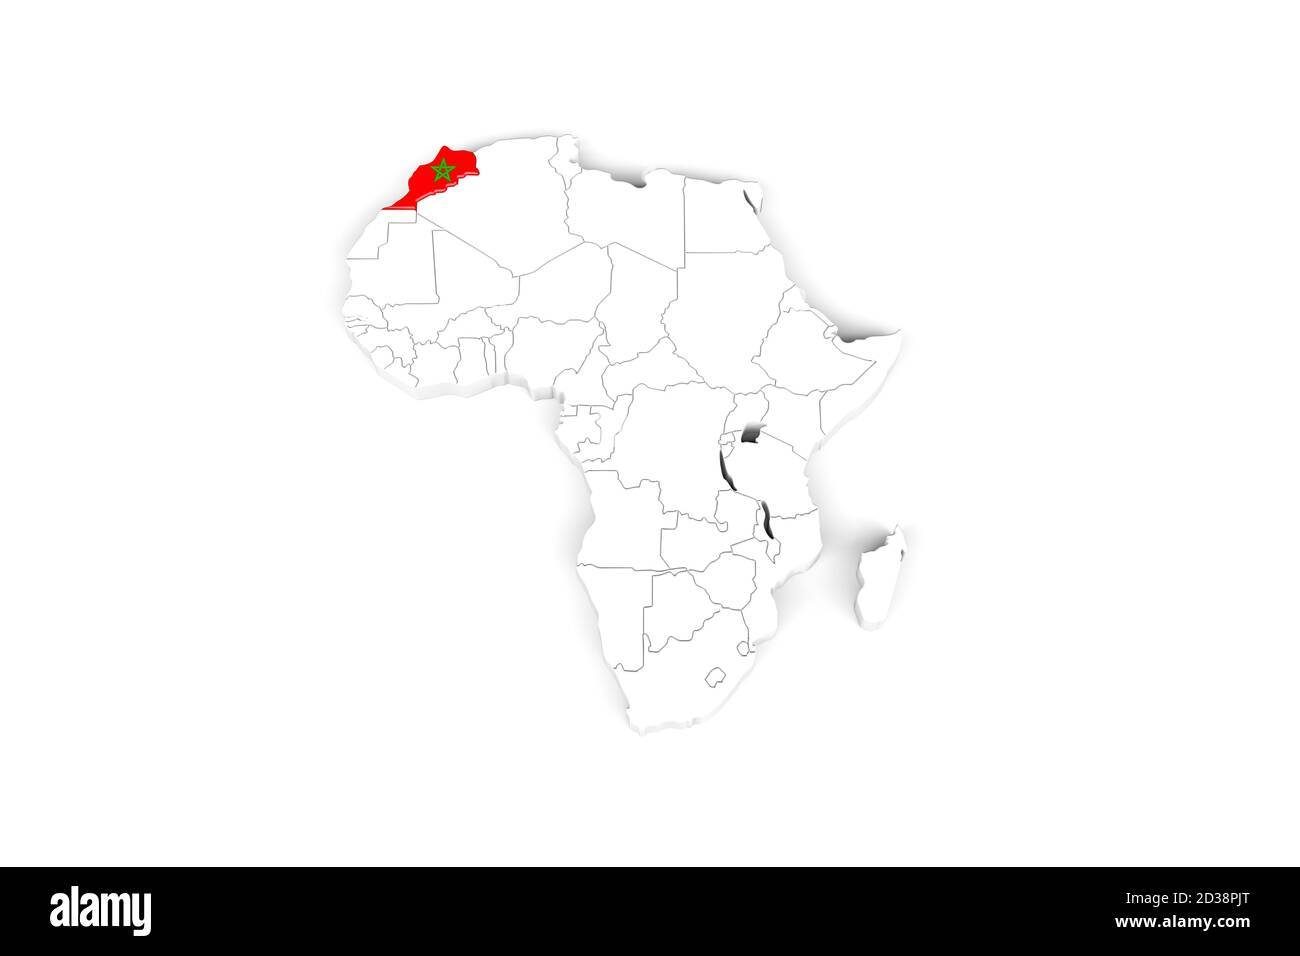 Africa Mappa 3d con i bordi contrassegnati - Marocco area marcata Con bandiera Marocco - isolato su sfondo bianco - 3D Illustrazione Foto Stock